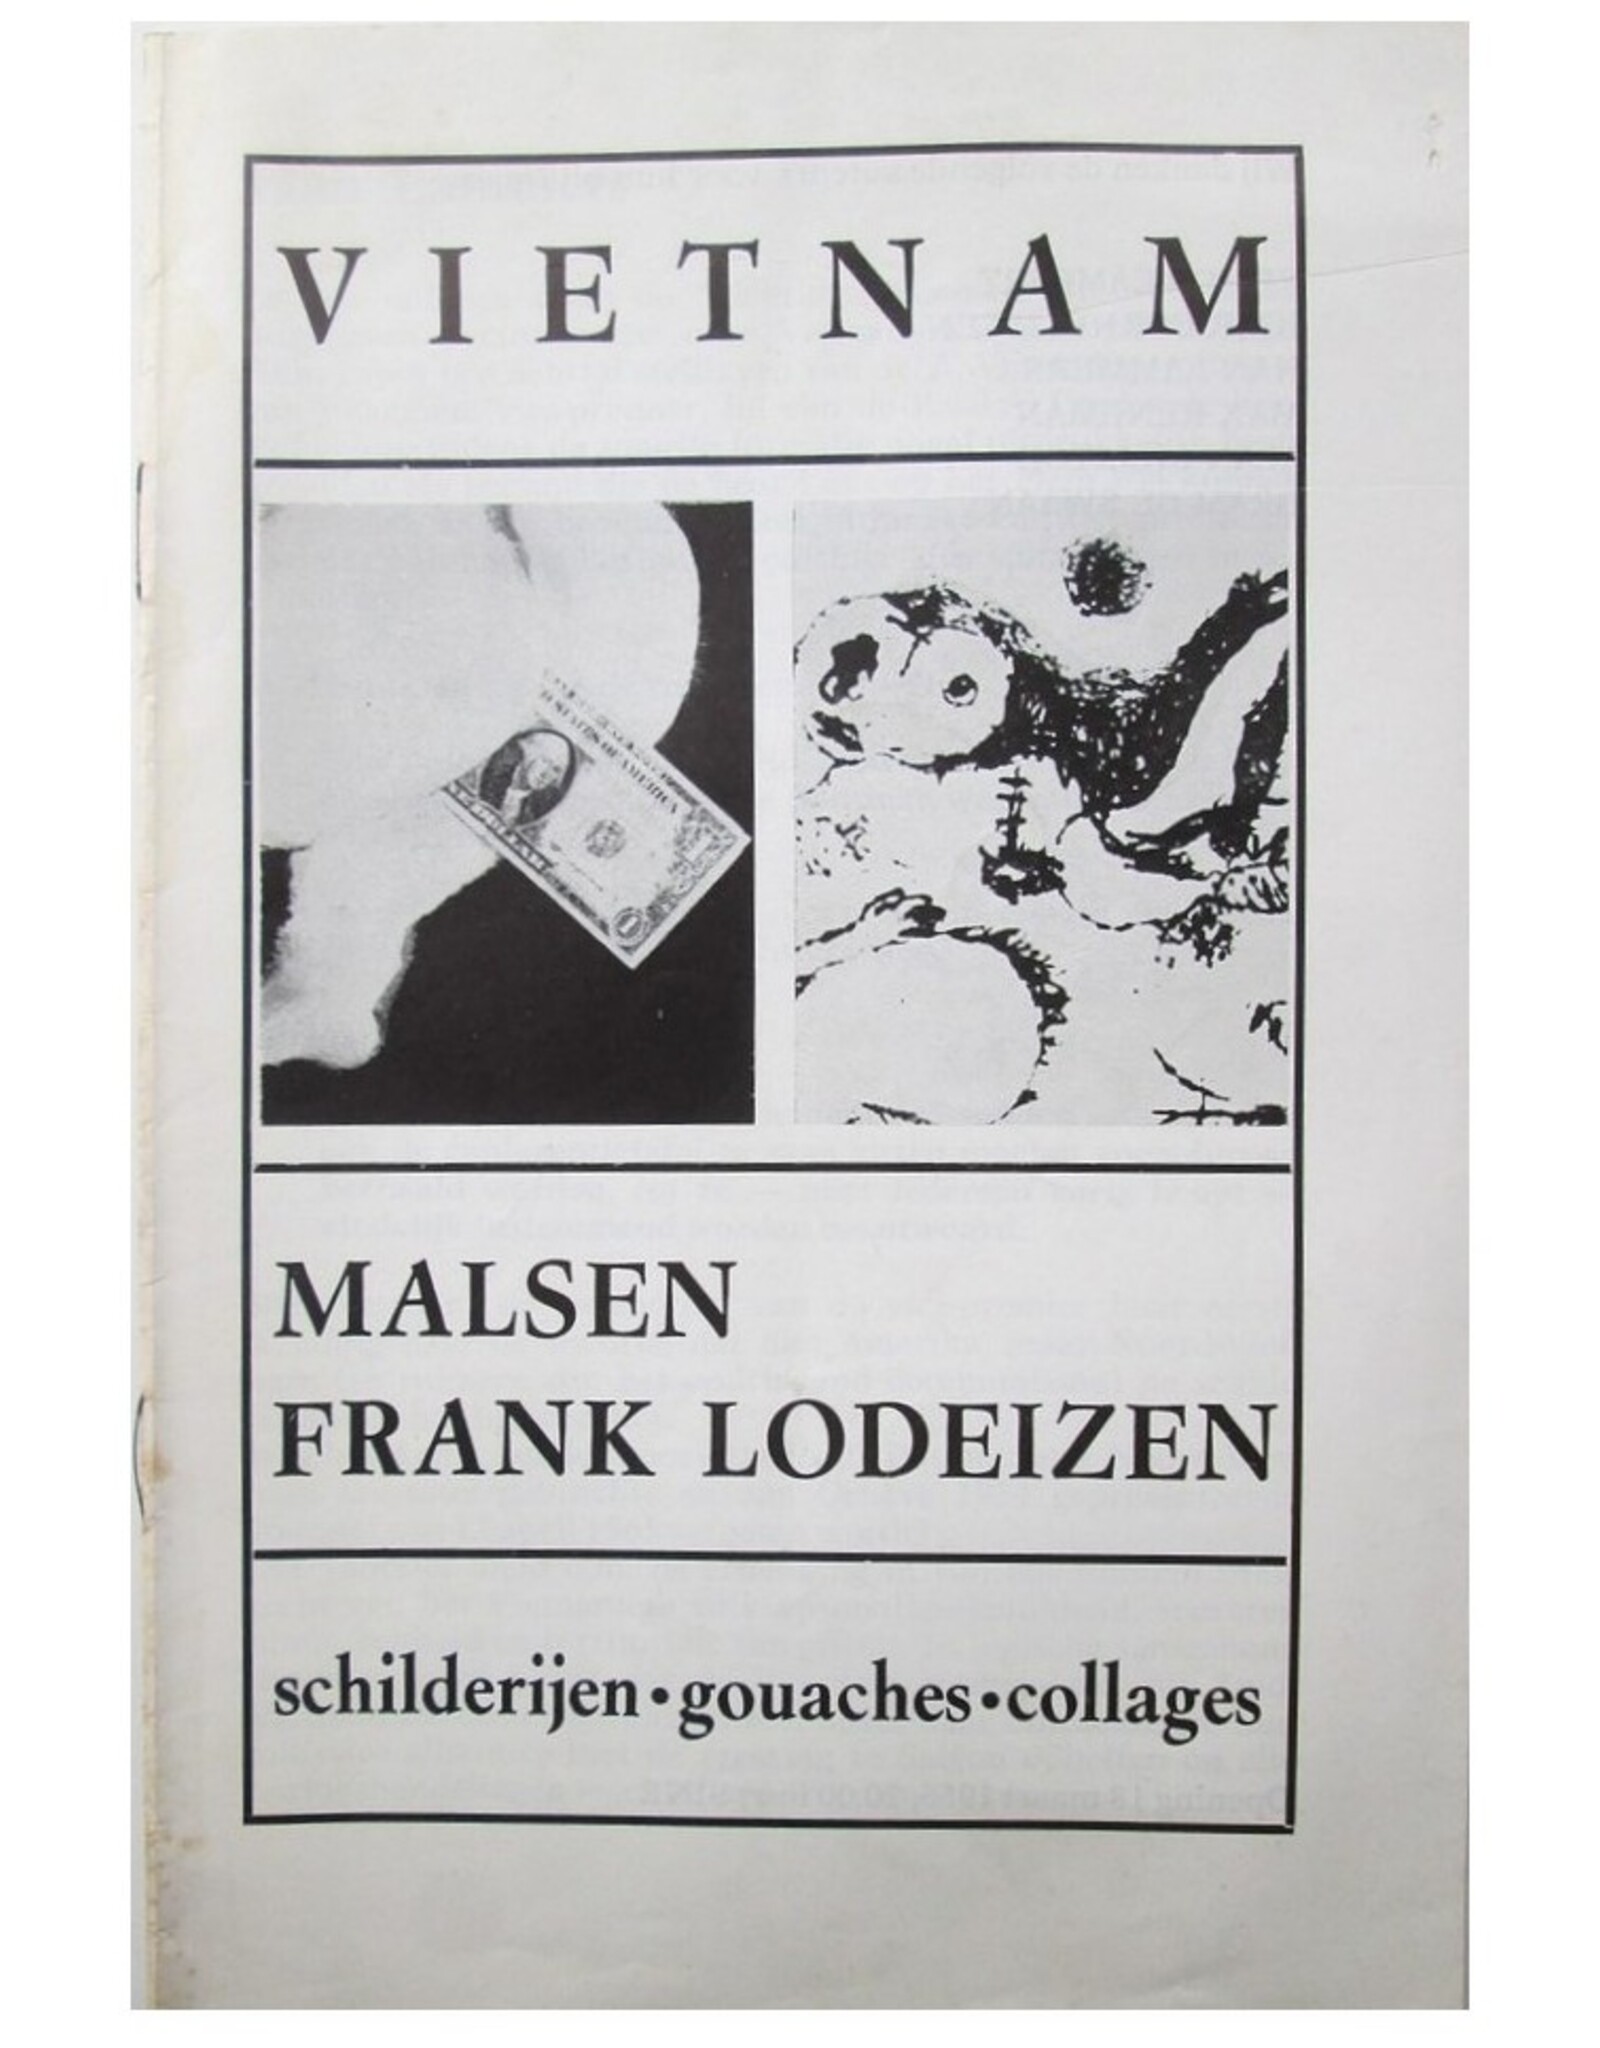 Remco Campert [e.a.] - Malsen / Frank Lodeizen: Vietnam. Schilderijen, gouaches, collages